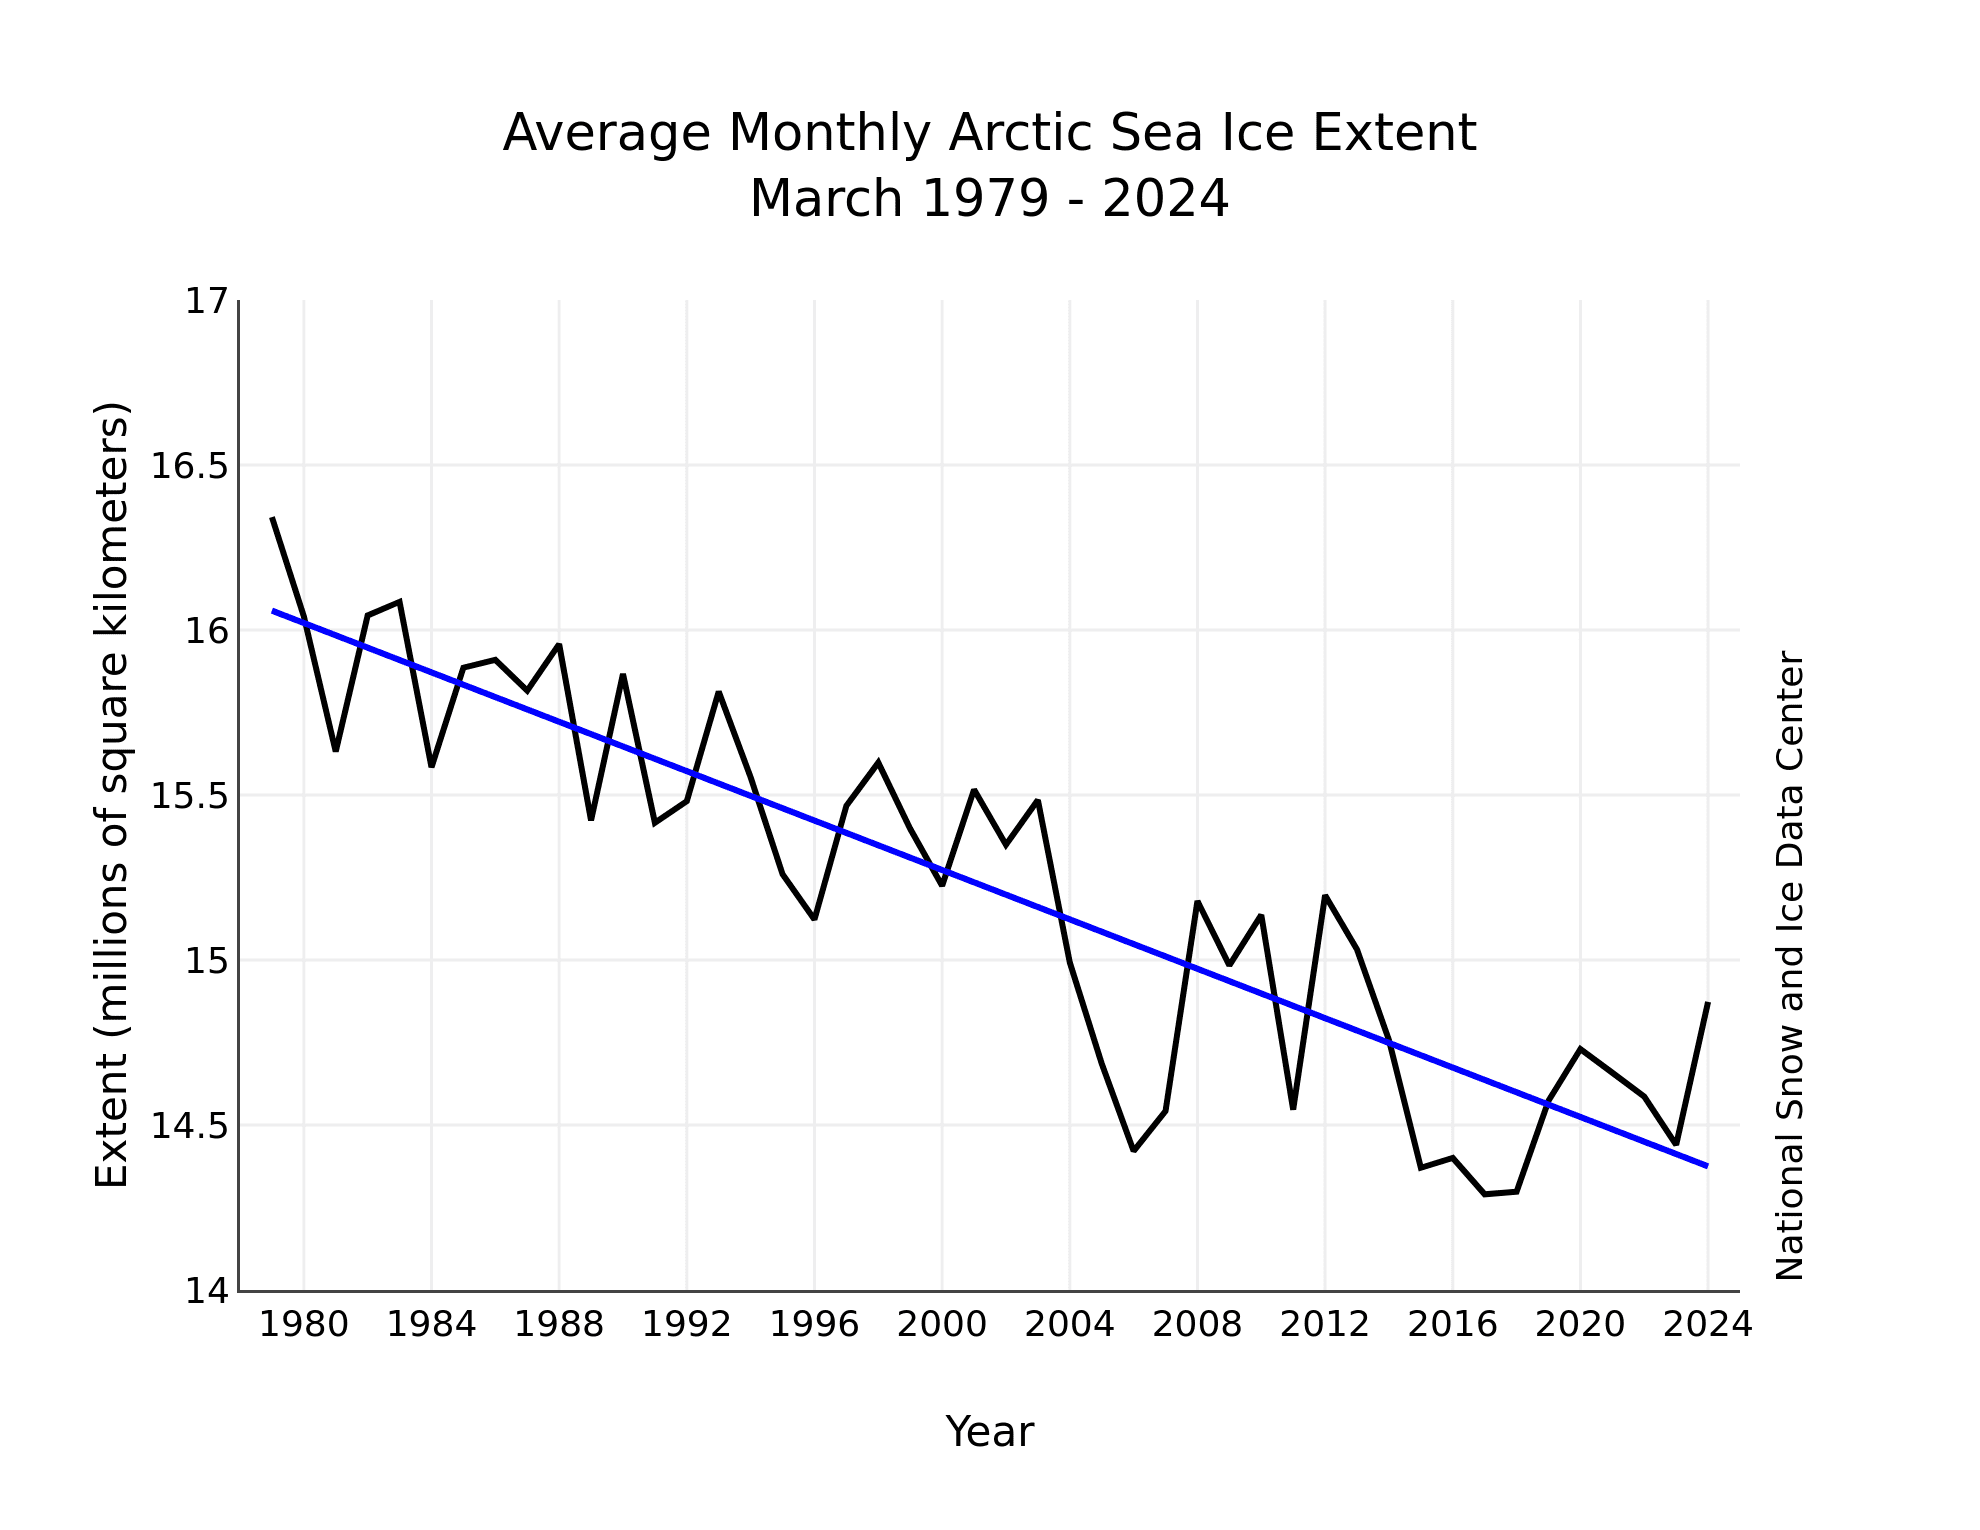 Średni zasięg lodu arktycznego w marcu w latach 1979-2024. Od lat widać tendencję spadkową.